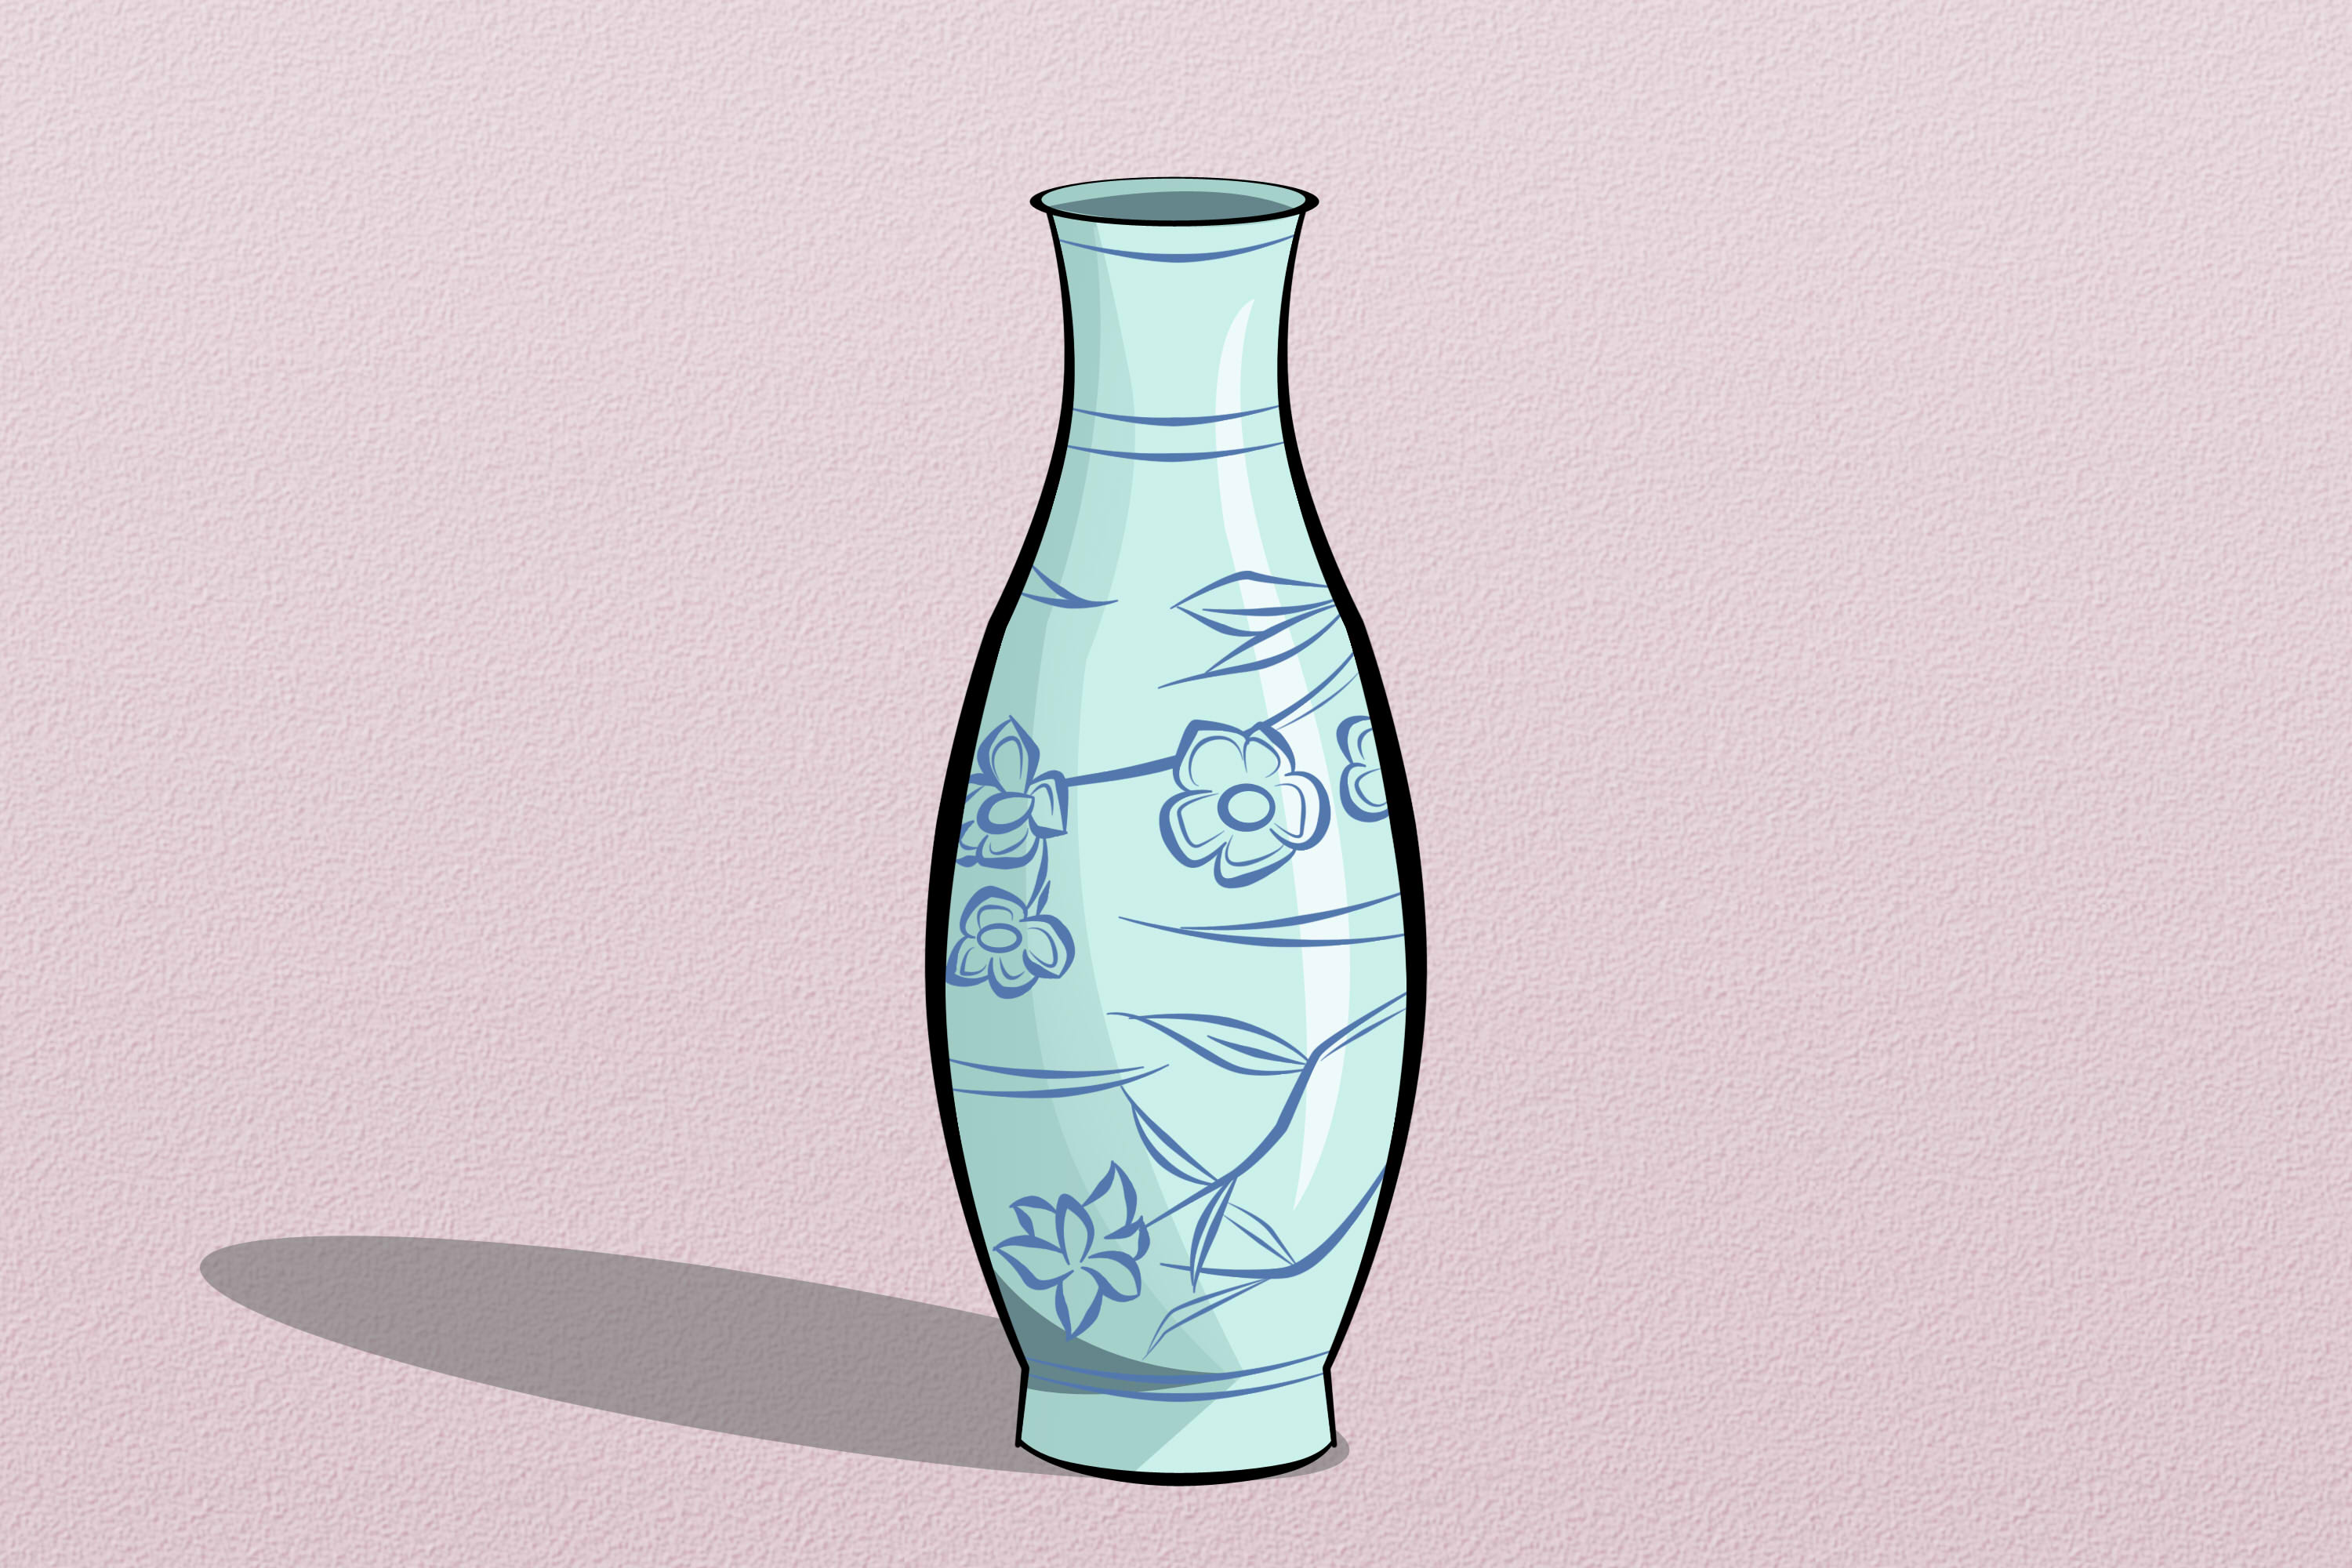 Vase Drawing Stunning Sketch